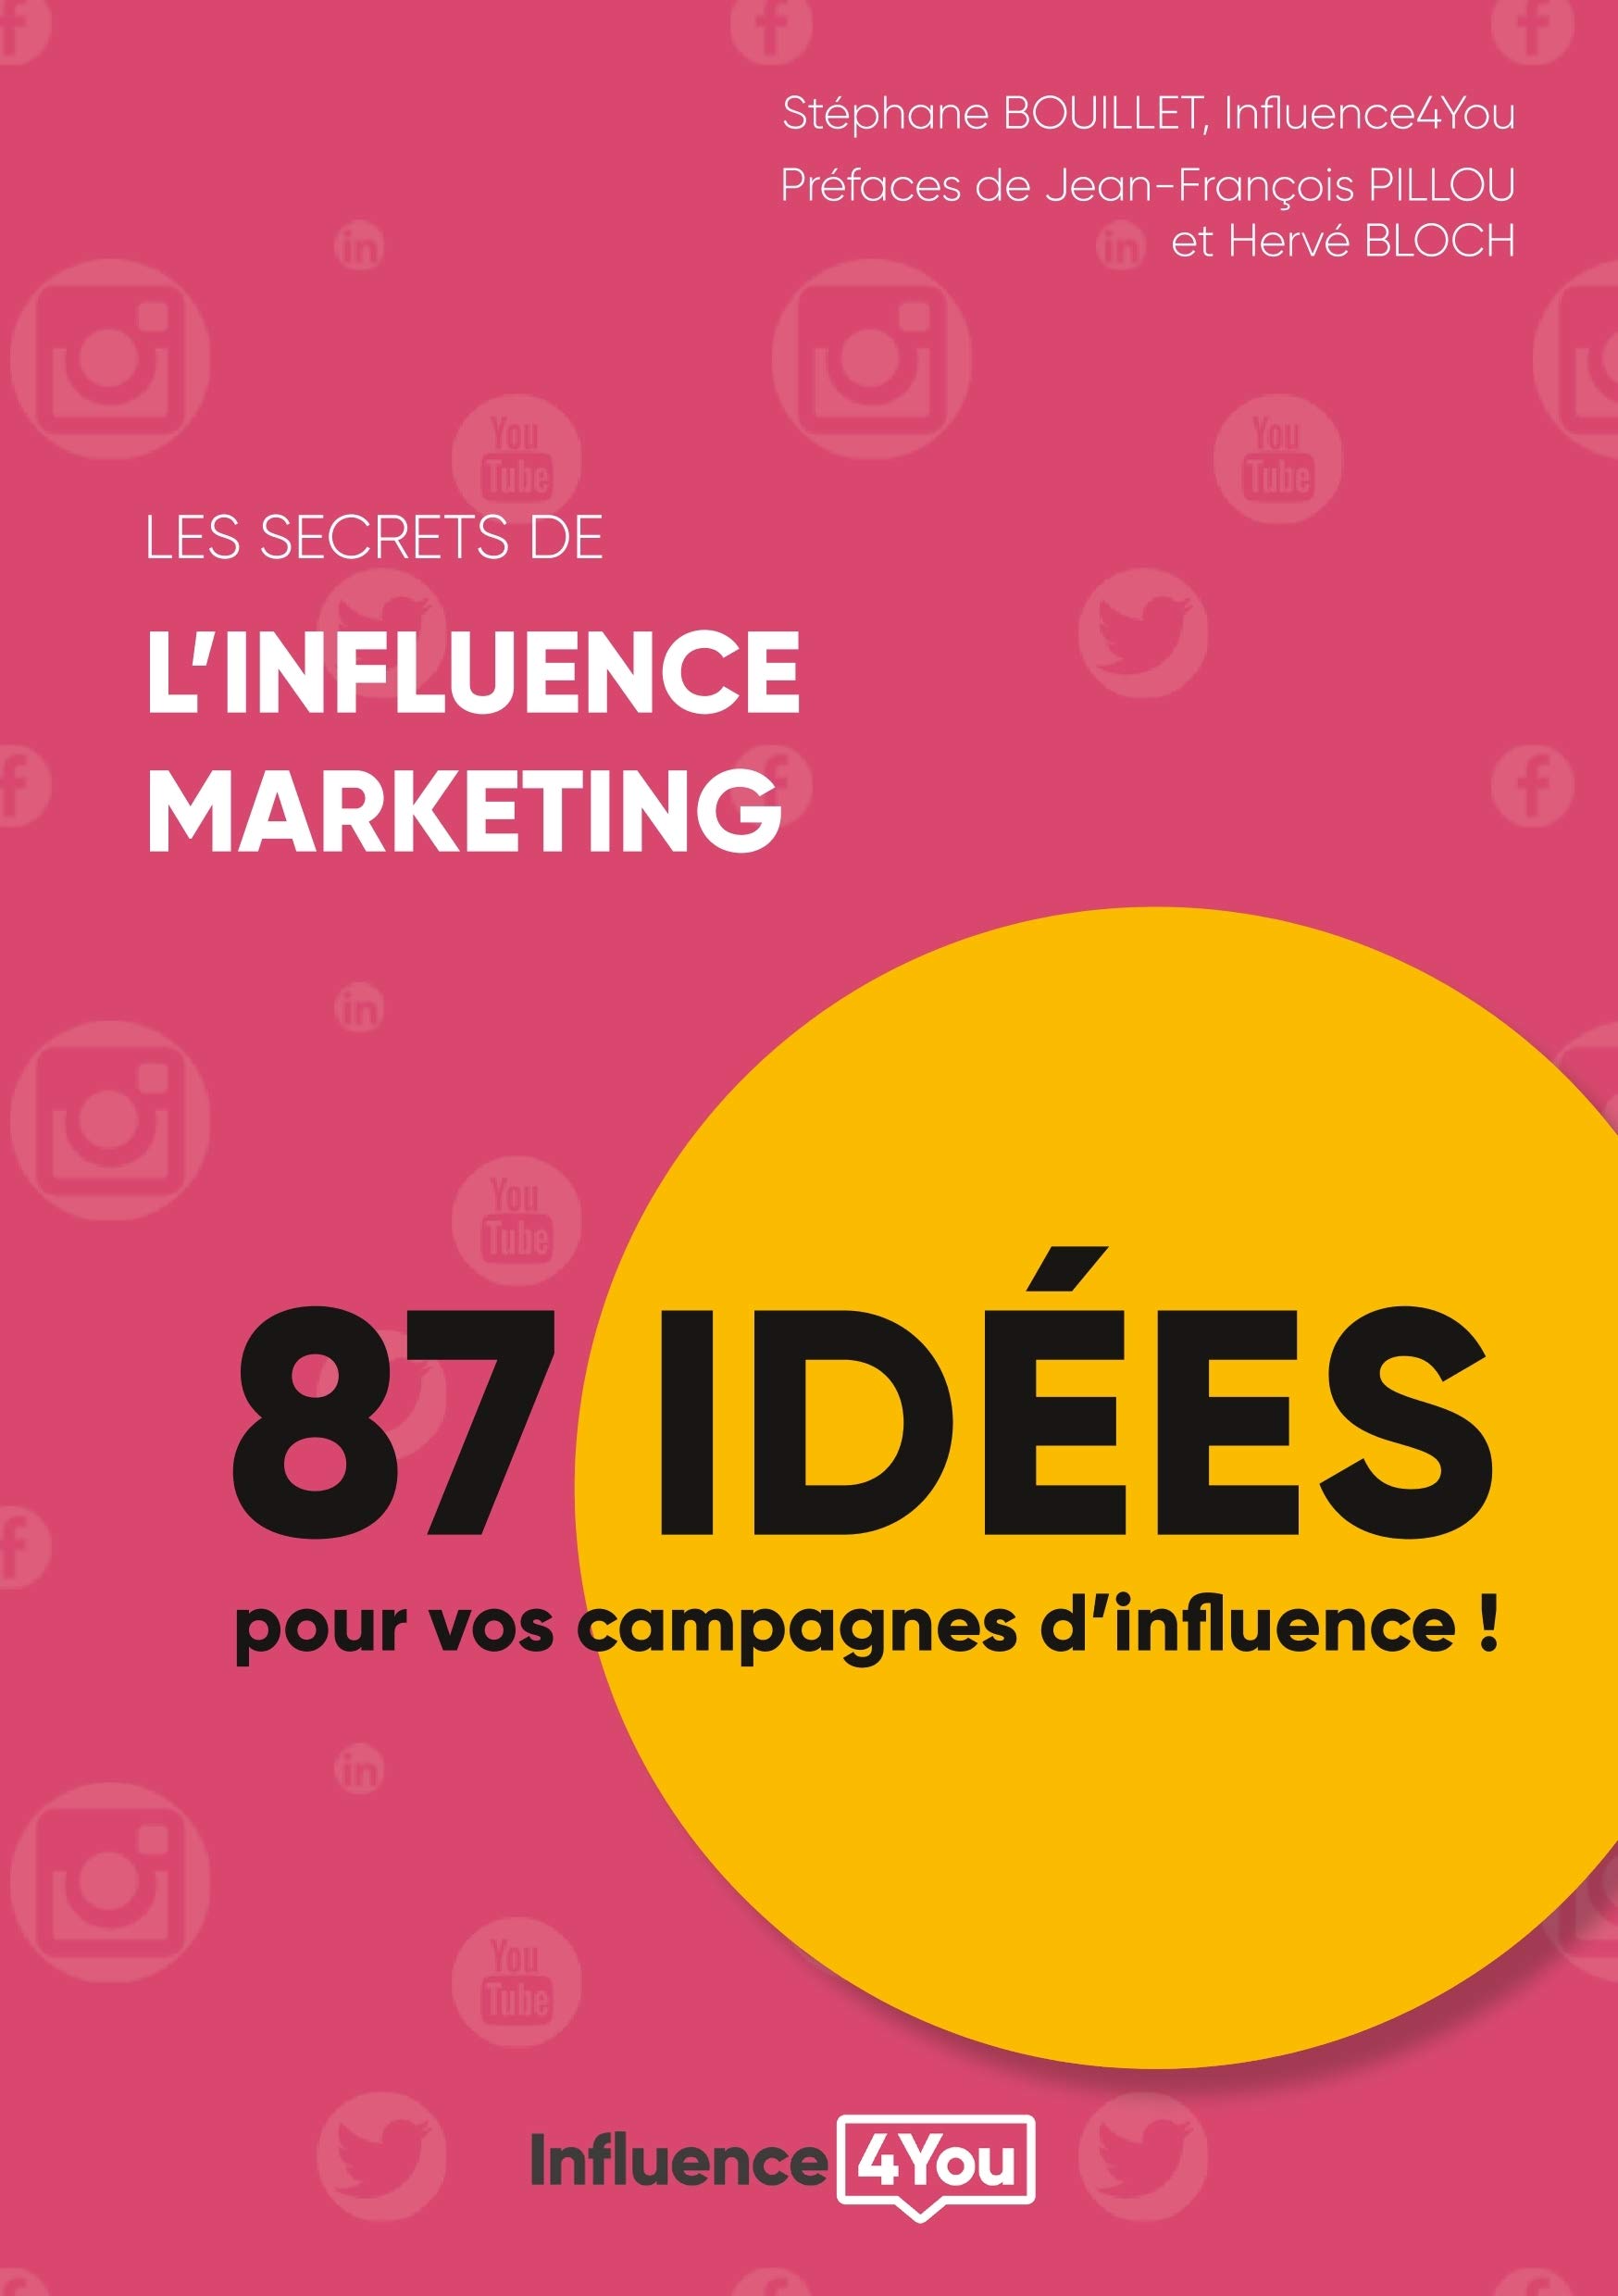 Les secrets de l'influence marketing: 87 idées de campagne d'influence